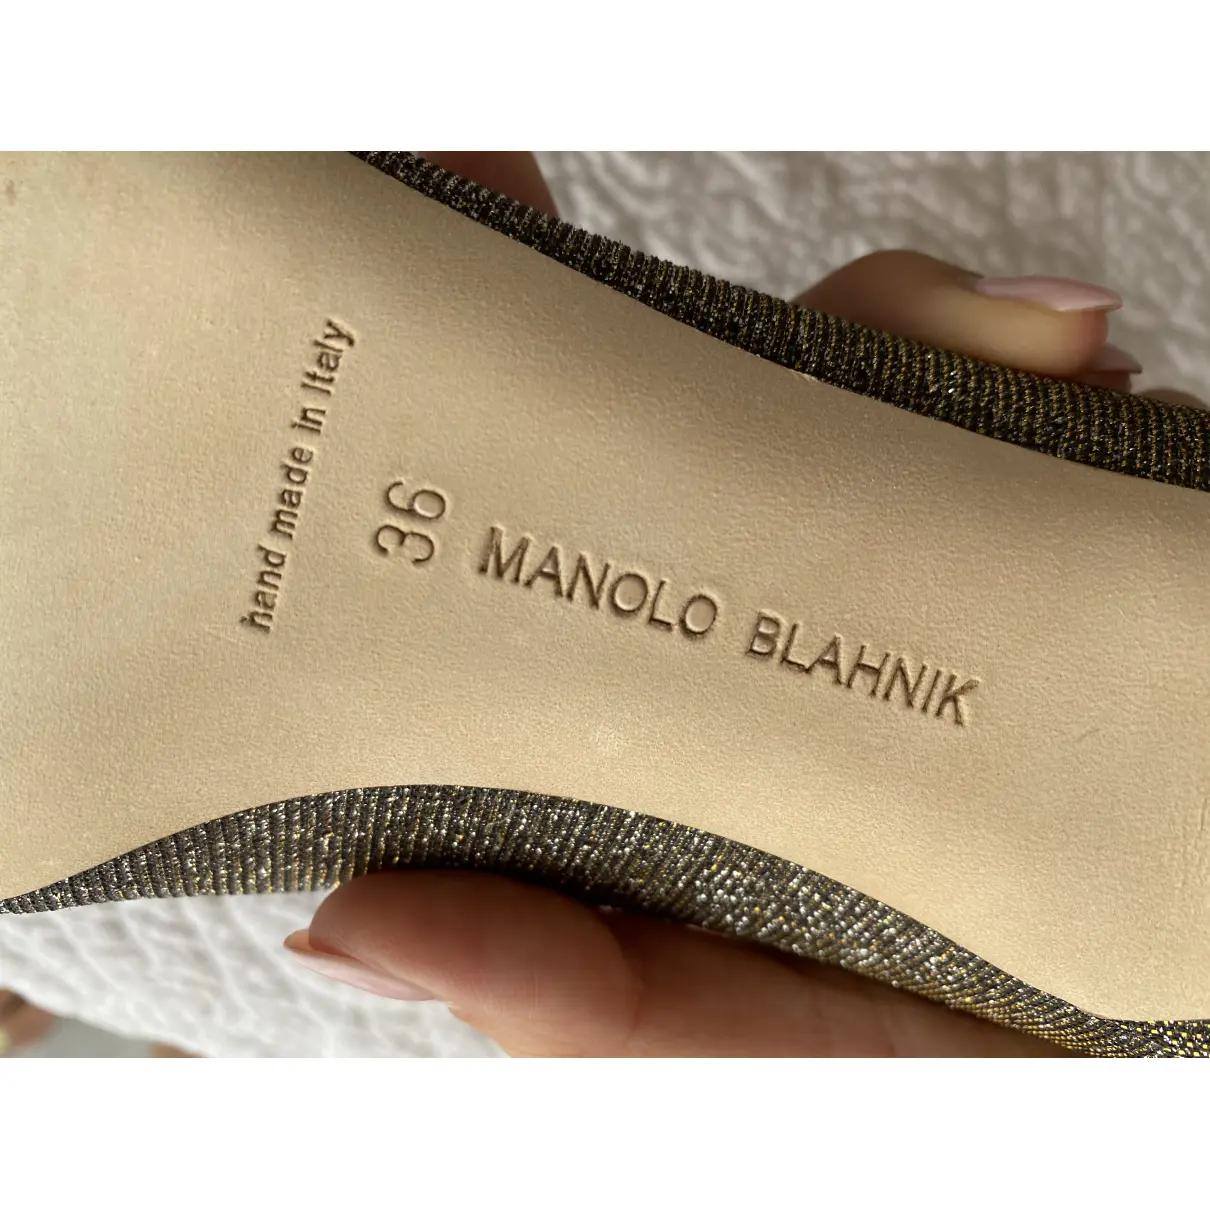 Luxury Manolo Blahnik Heels Women